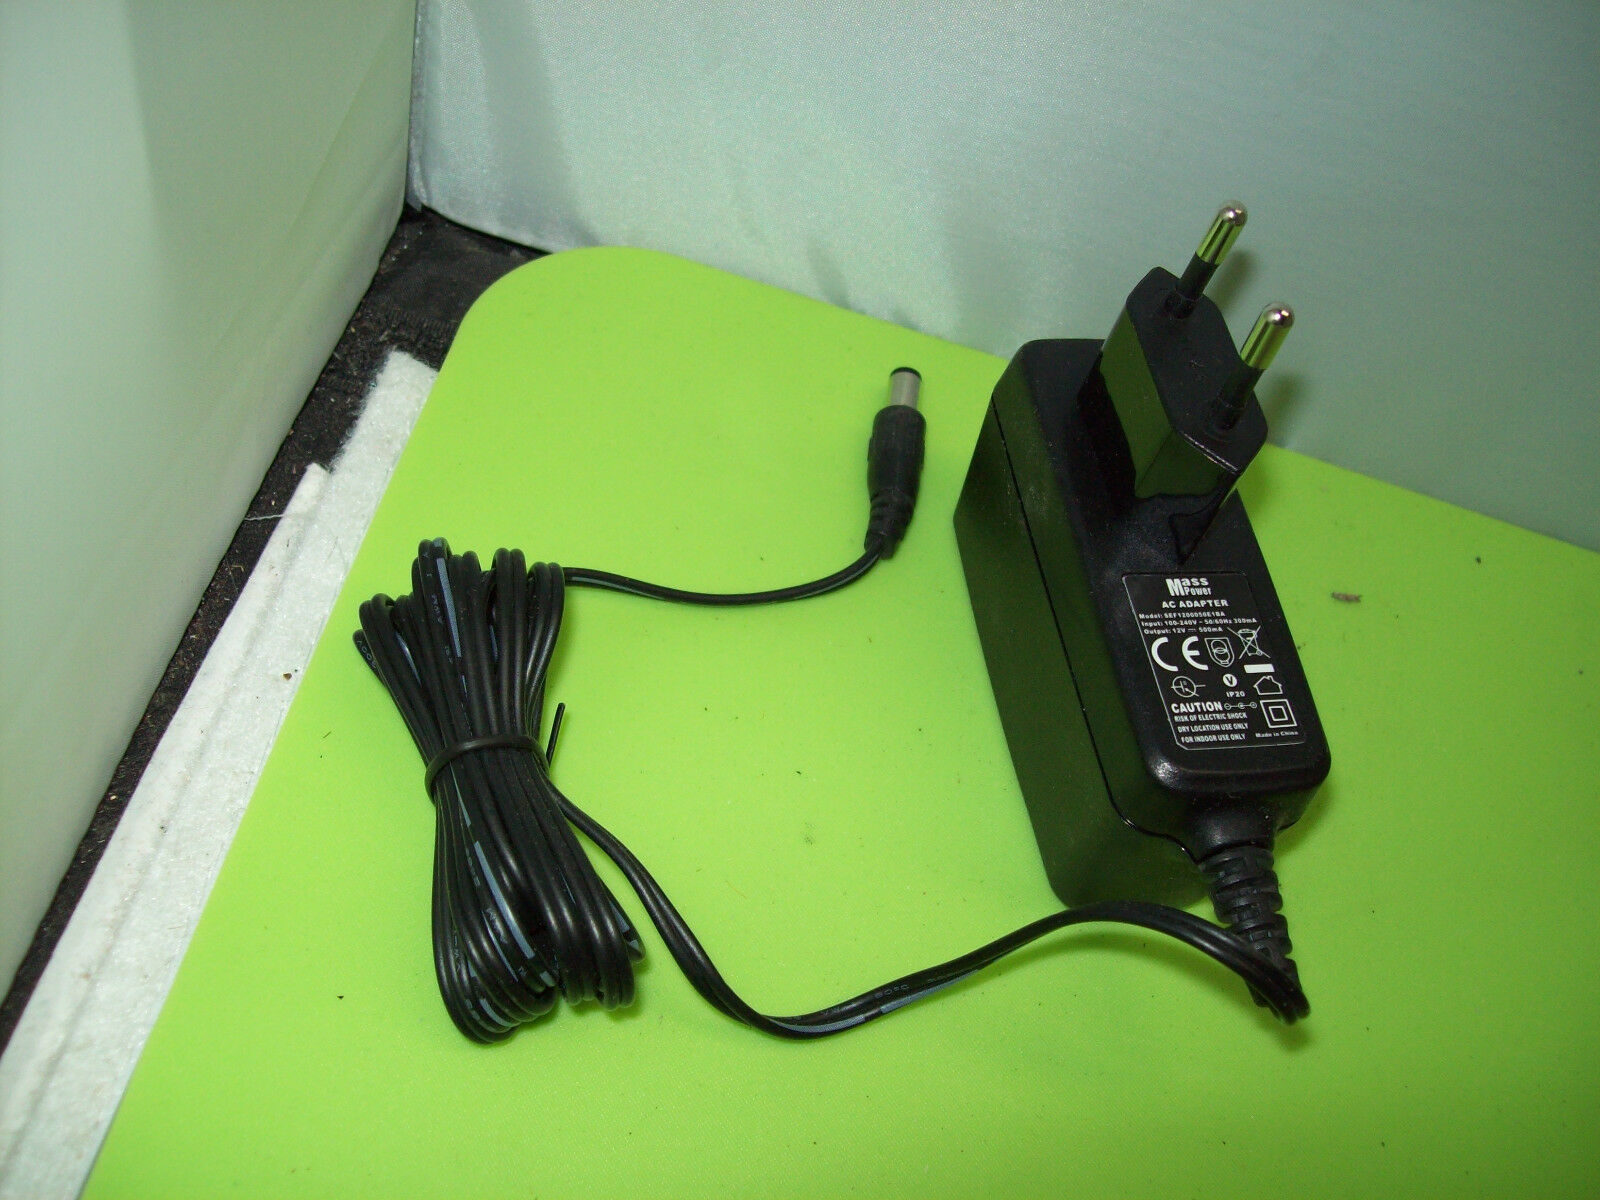 Original Power Supply AC Adapter Mass Power sef1200050e1ba 12v Marke: mass Her - Click Image to Close